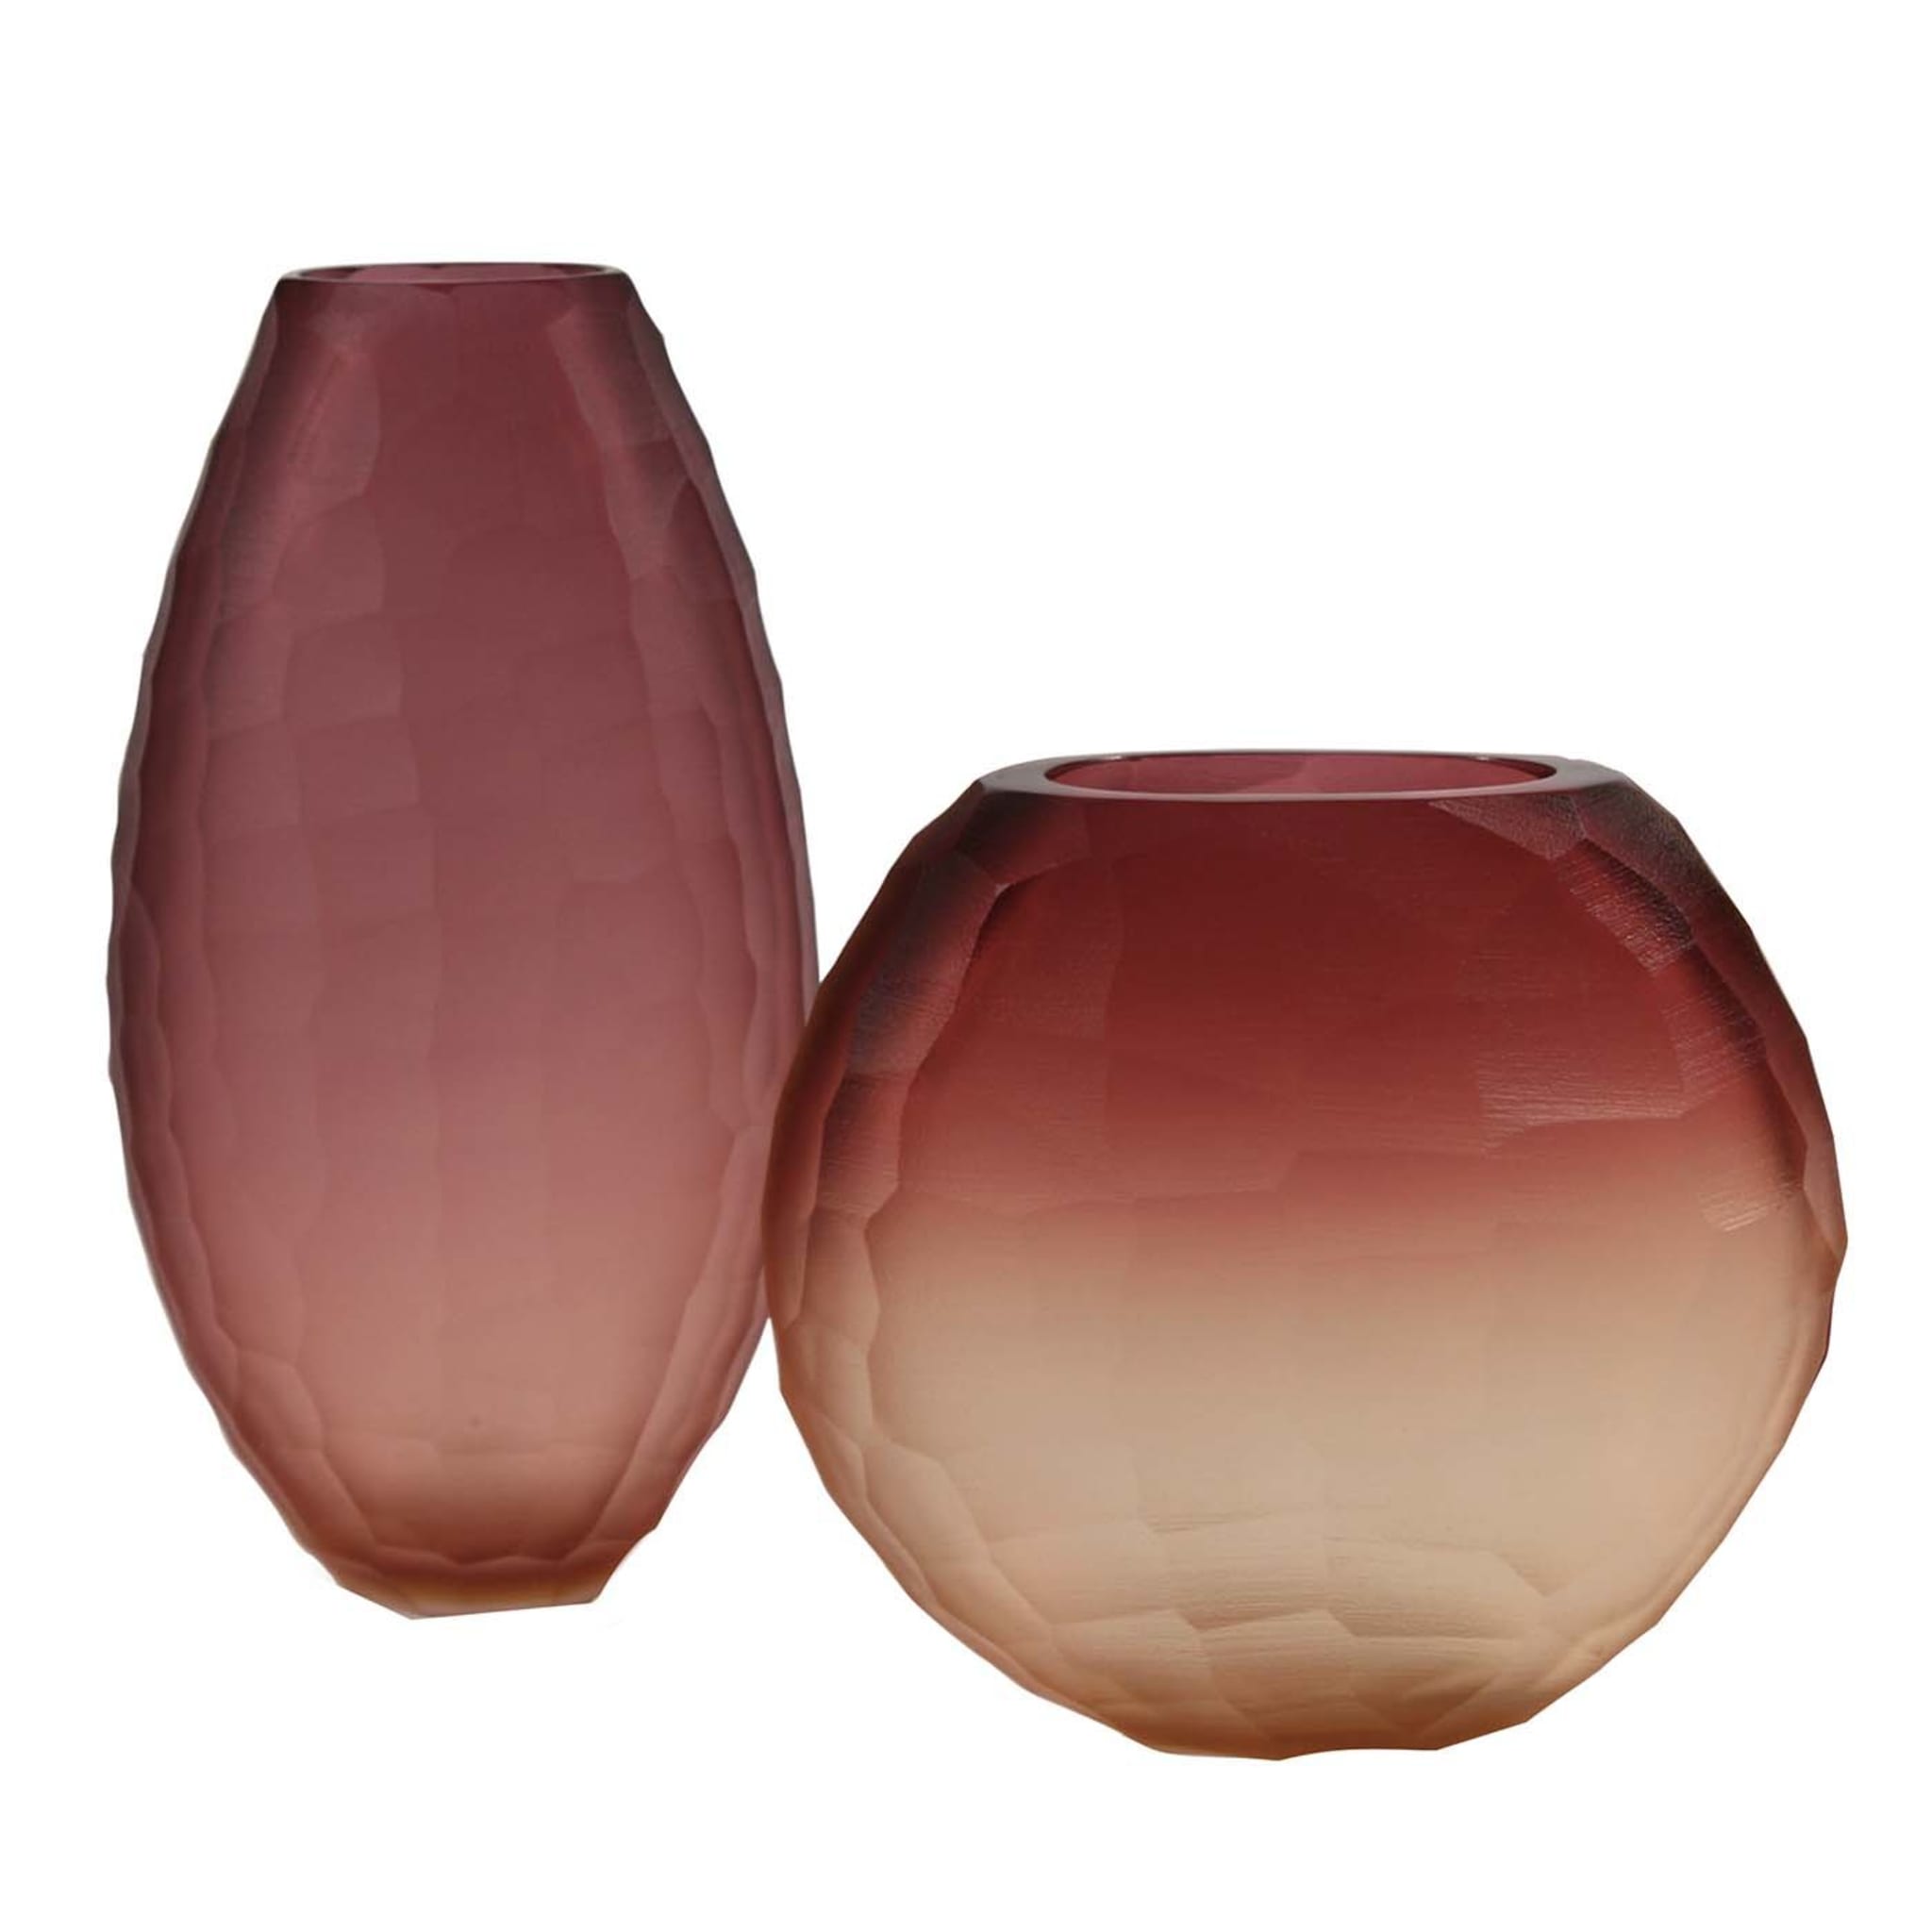 Segretissimi Battuti Set of Two Red Vases - Main view